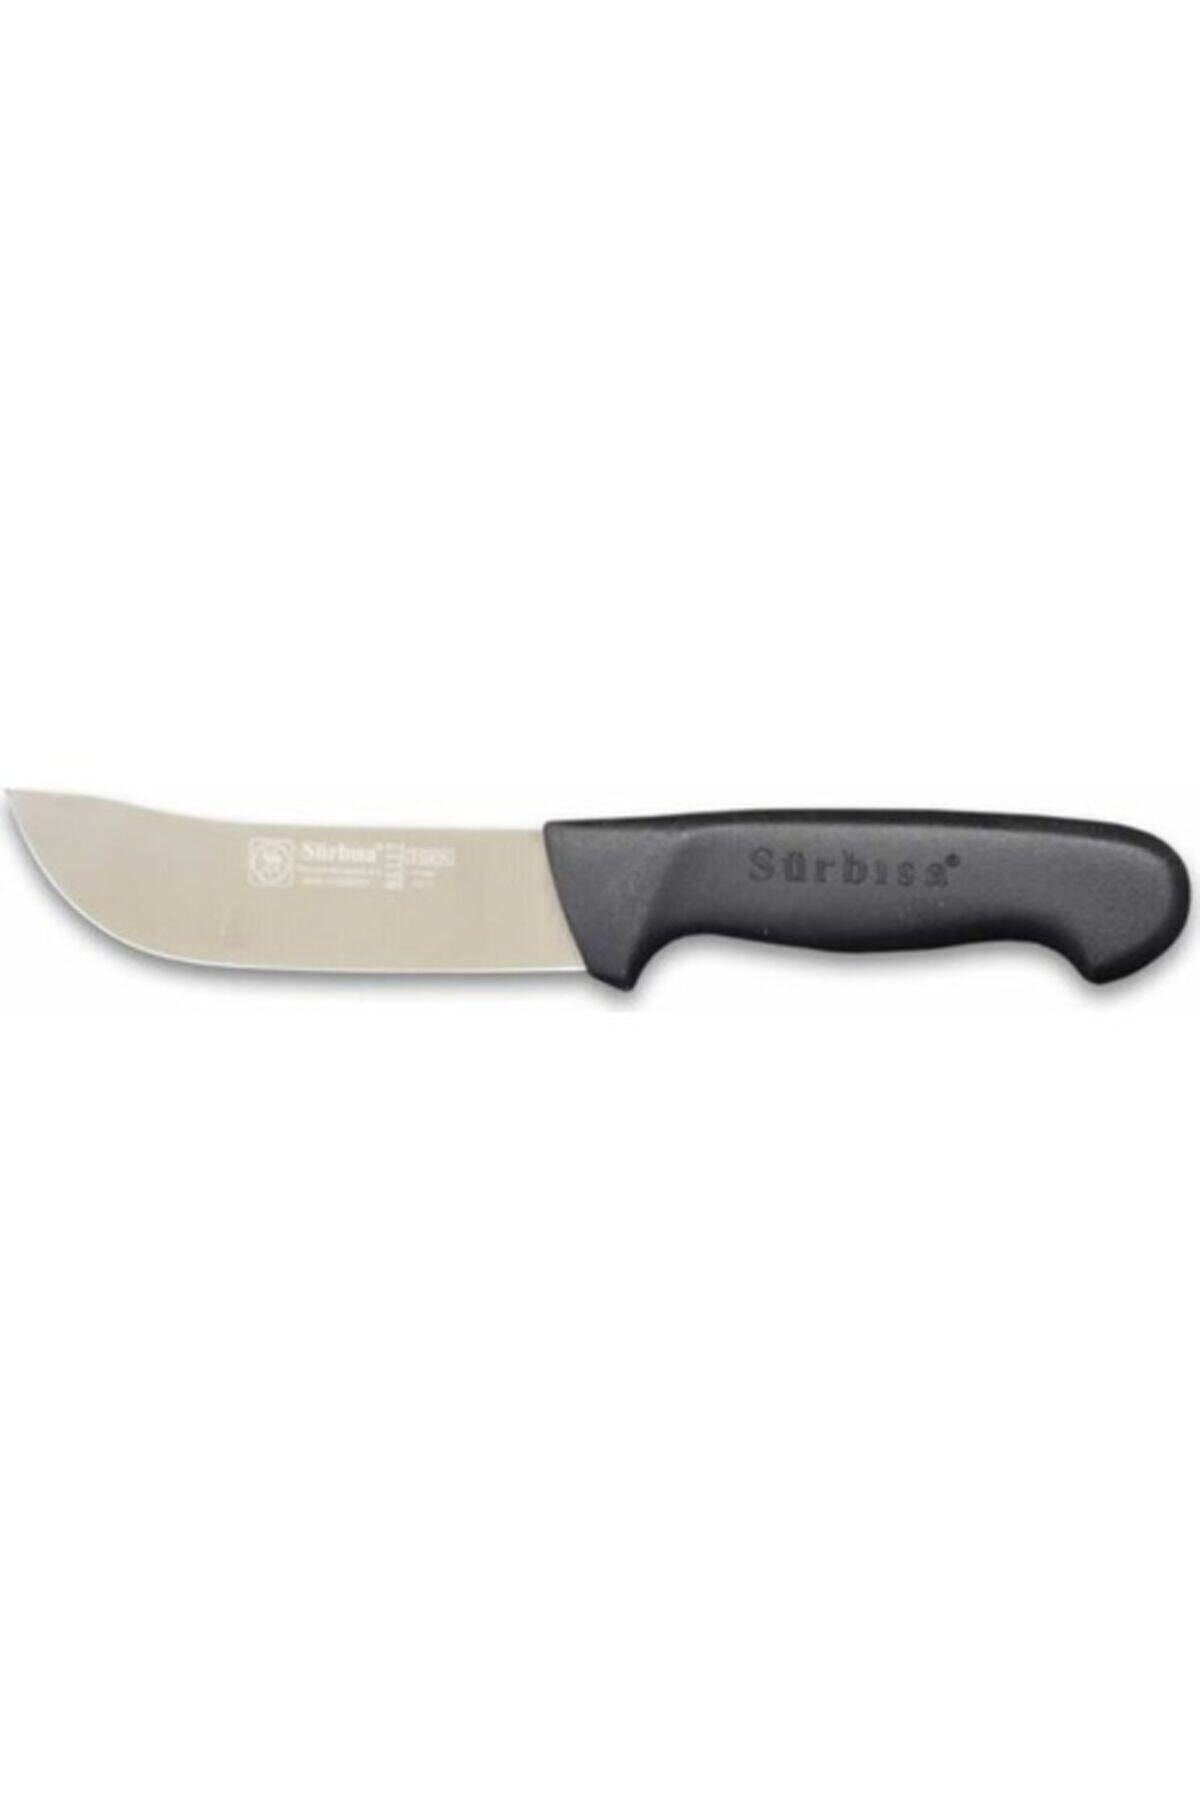 Sürbisa 61116 Mutfak  Bıçağı 11,50 Cm